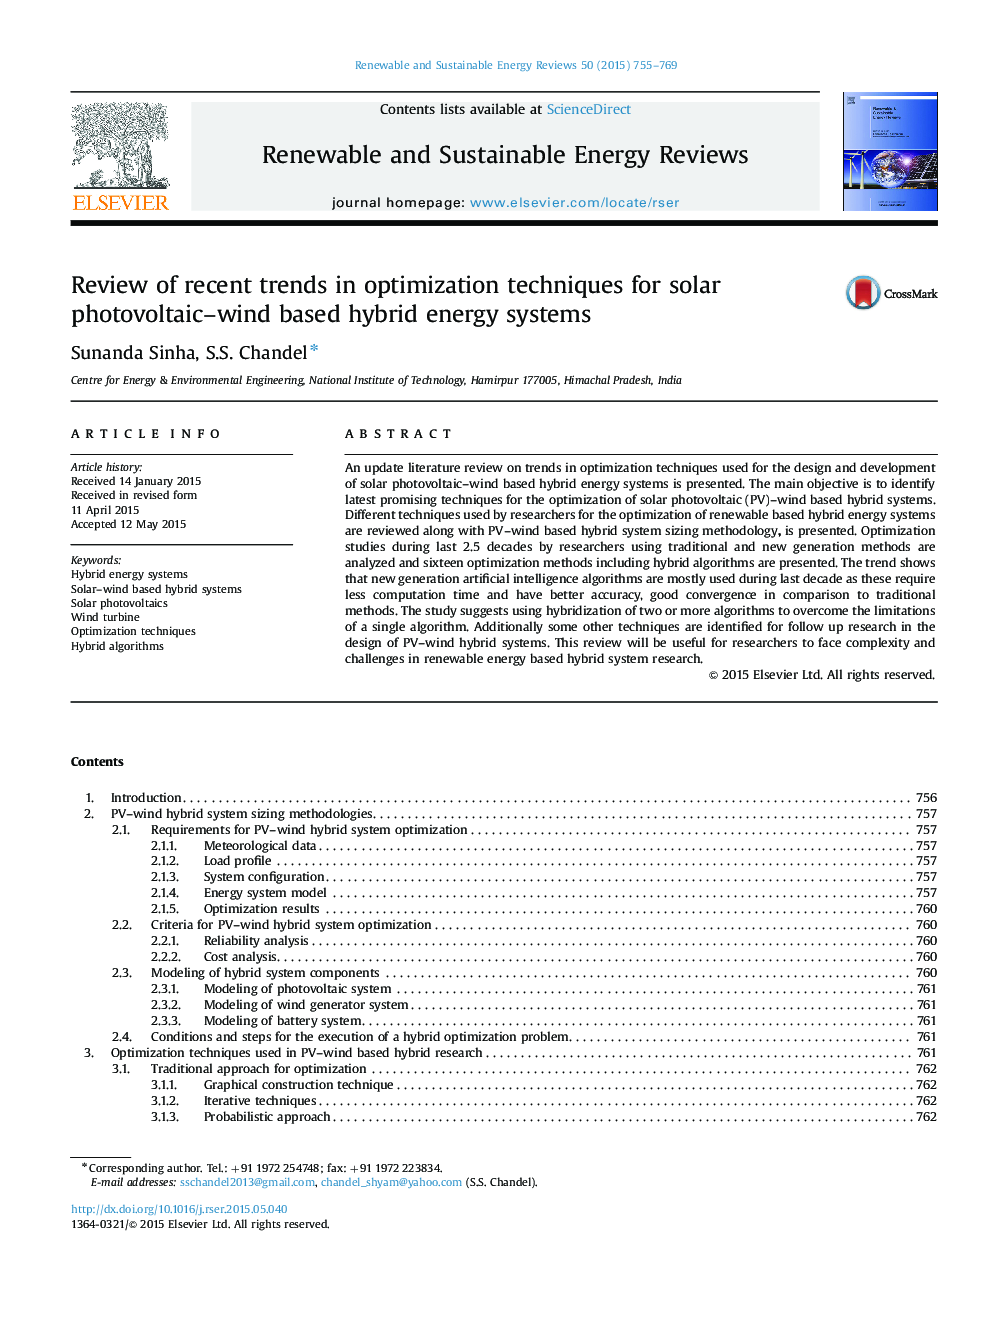 بررسی روند اخیر در تکنیک های بهینه سازی سیستم های انرژی هیبریدی مبتنی بر فتوولتائیک خورشیدی 